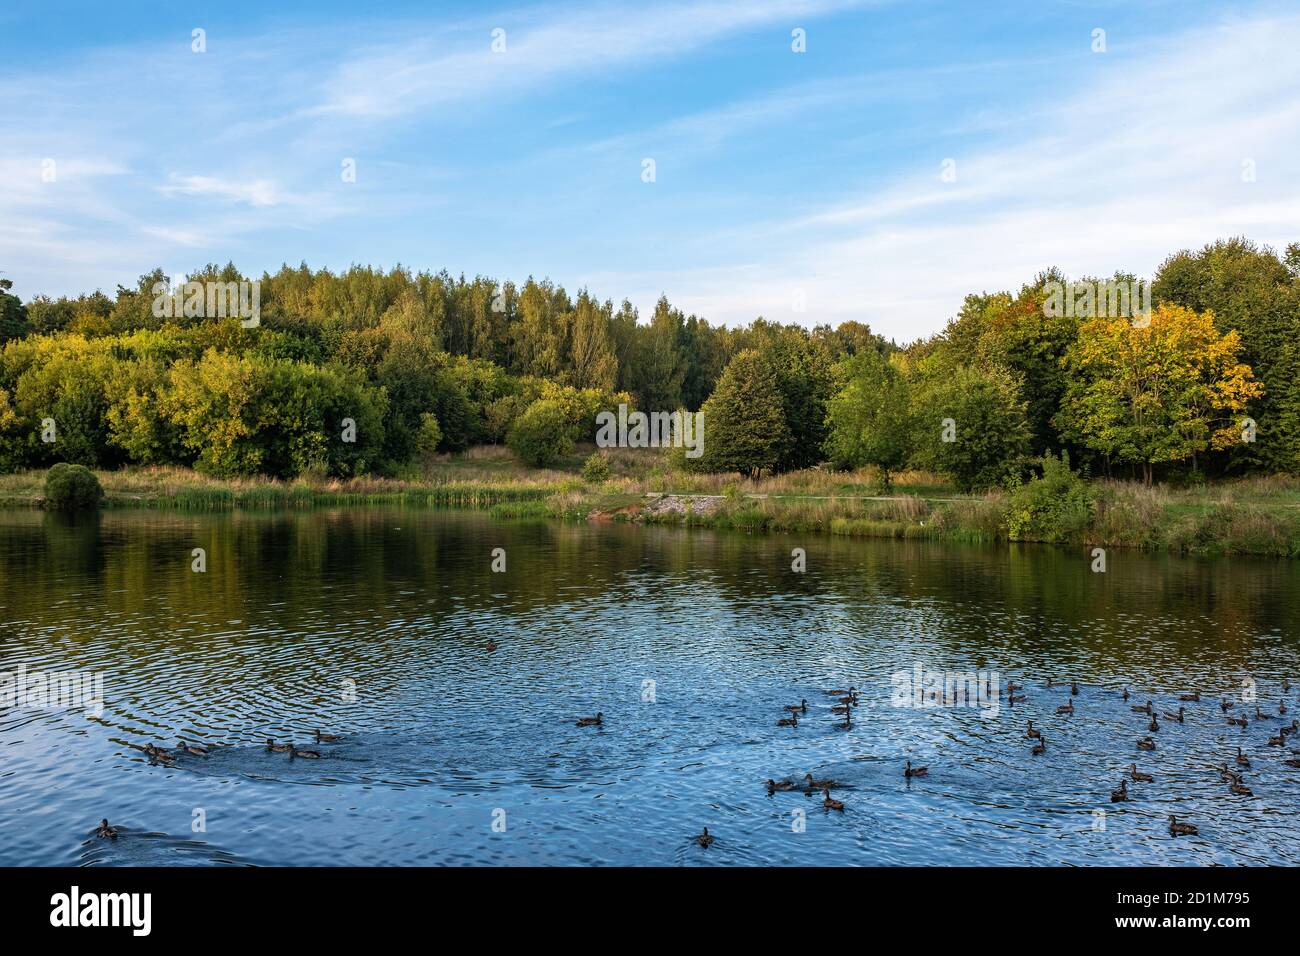 Serata d'autunno sul fiume Talka con anatre galleggianti e cespugli gialli, Ivanovo, Russia. Foto Stock